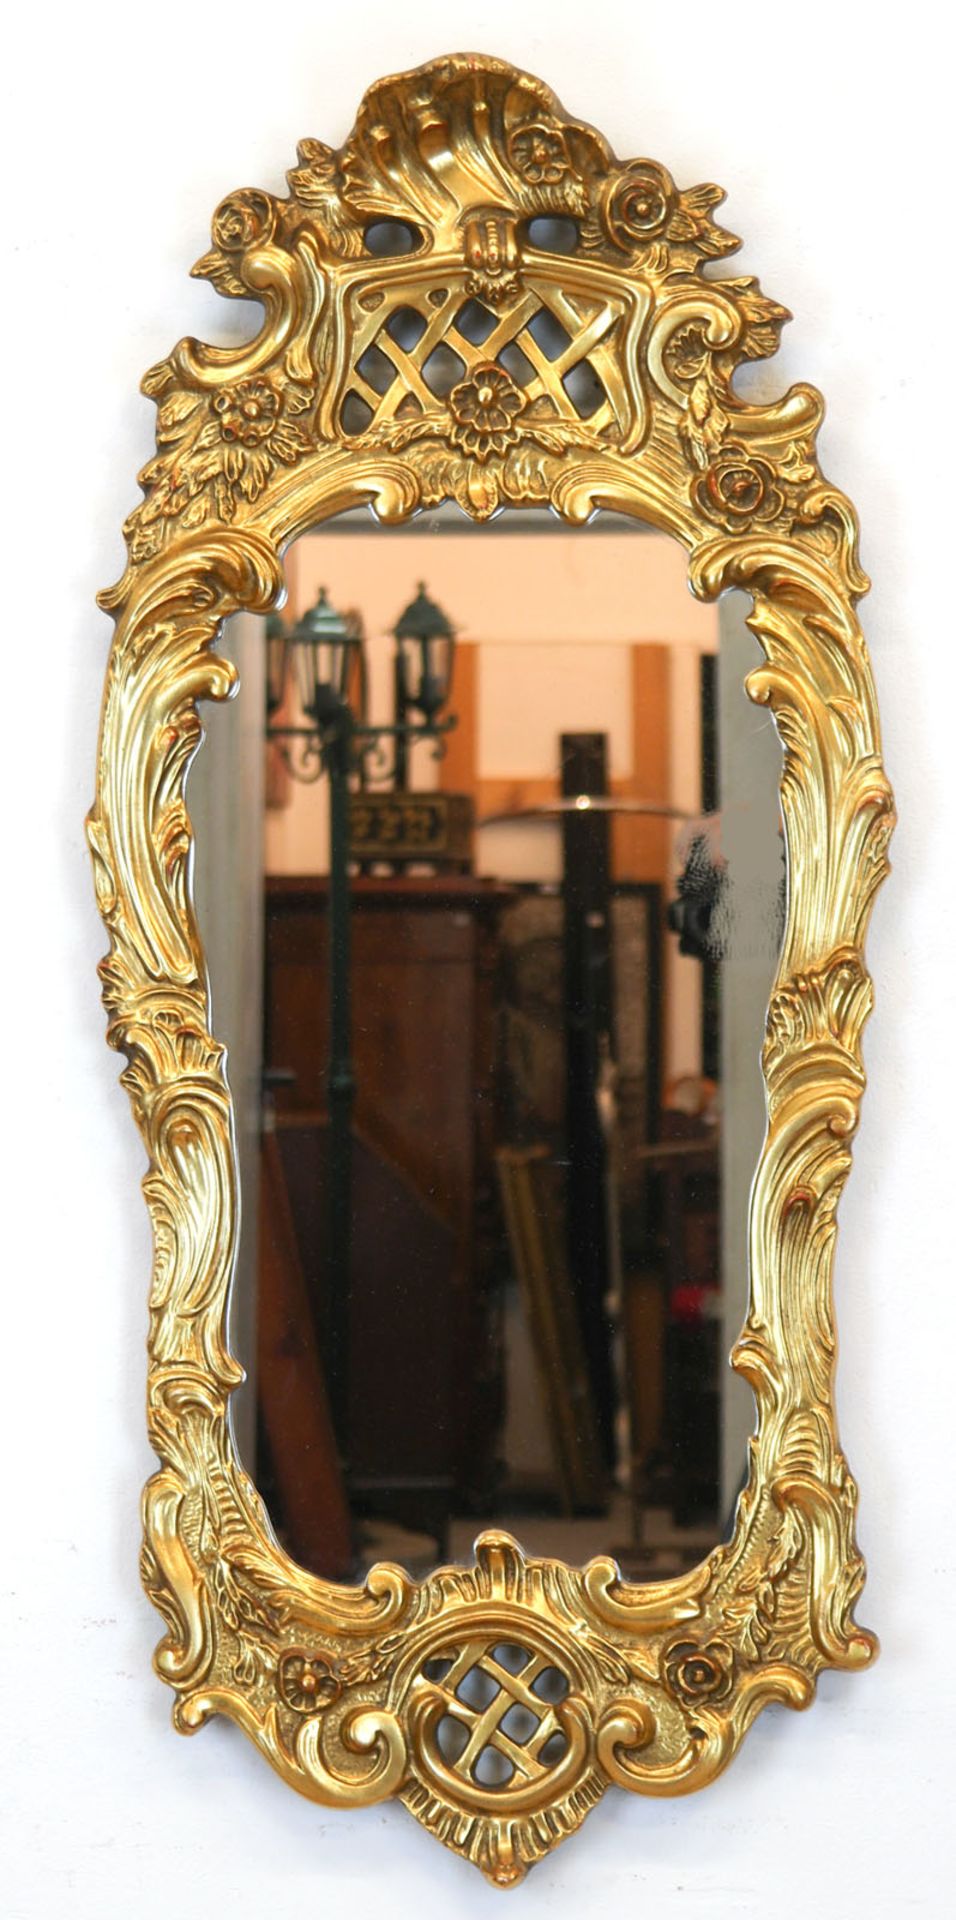 Spiegel im Rokokostil, Holz mit reichen Stuckverzierungen, vergoldet, 103x47x7 cm